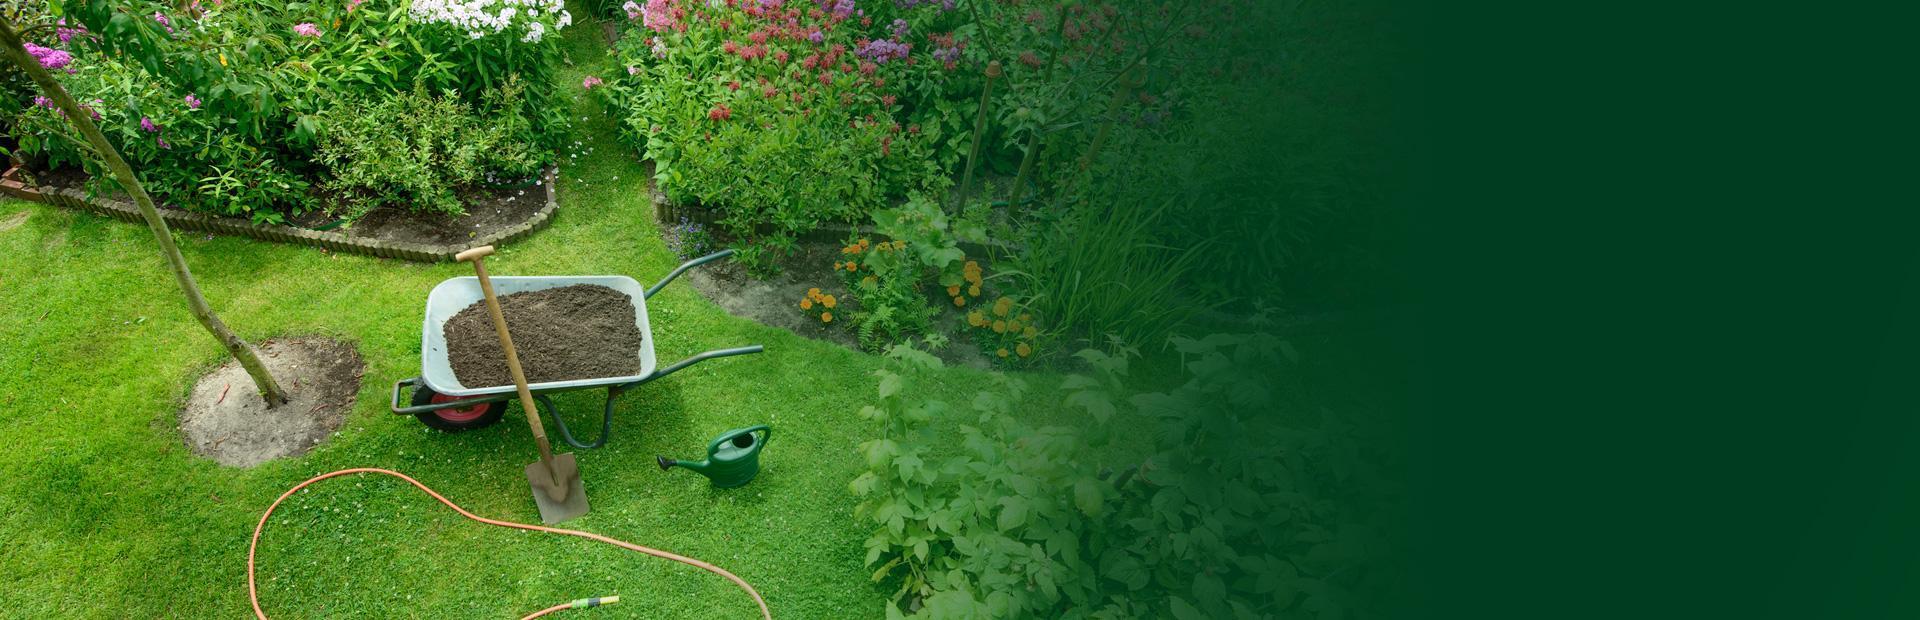 Piękny ogród z taczką i narzędziami ogrodowymi firma Art-Eco - slide 1